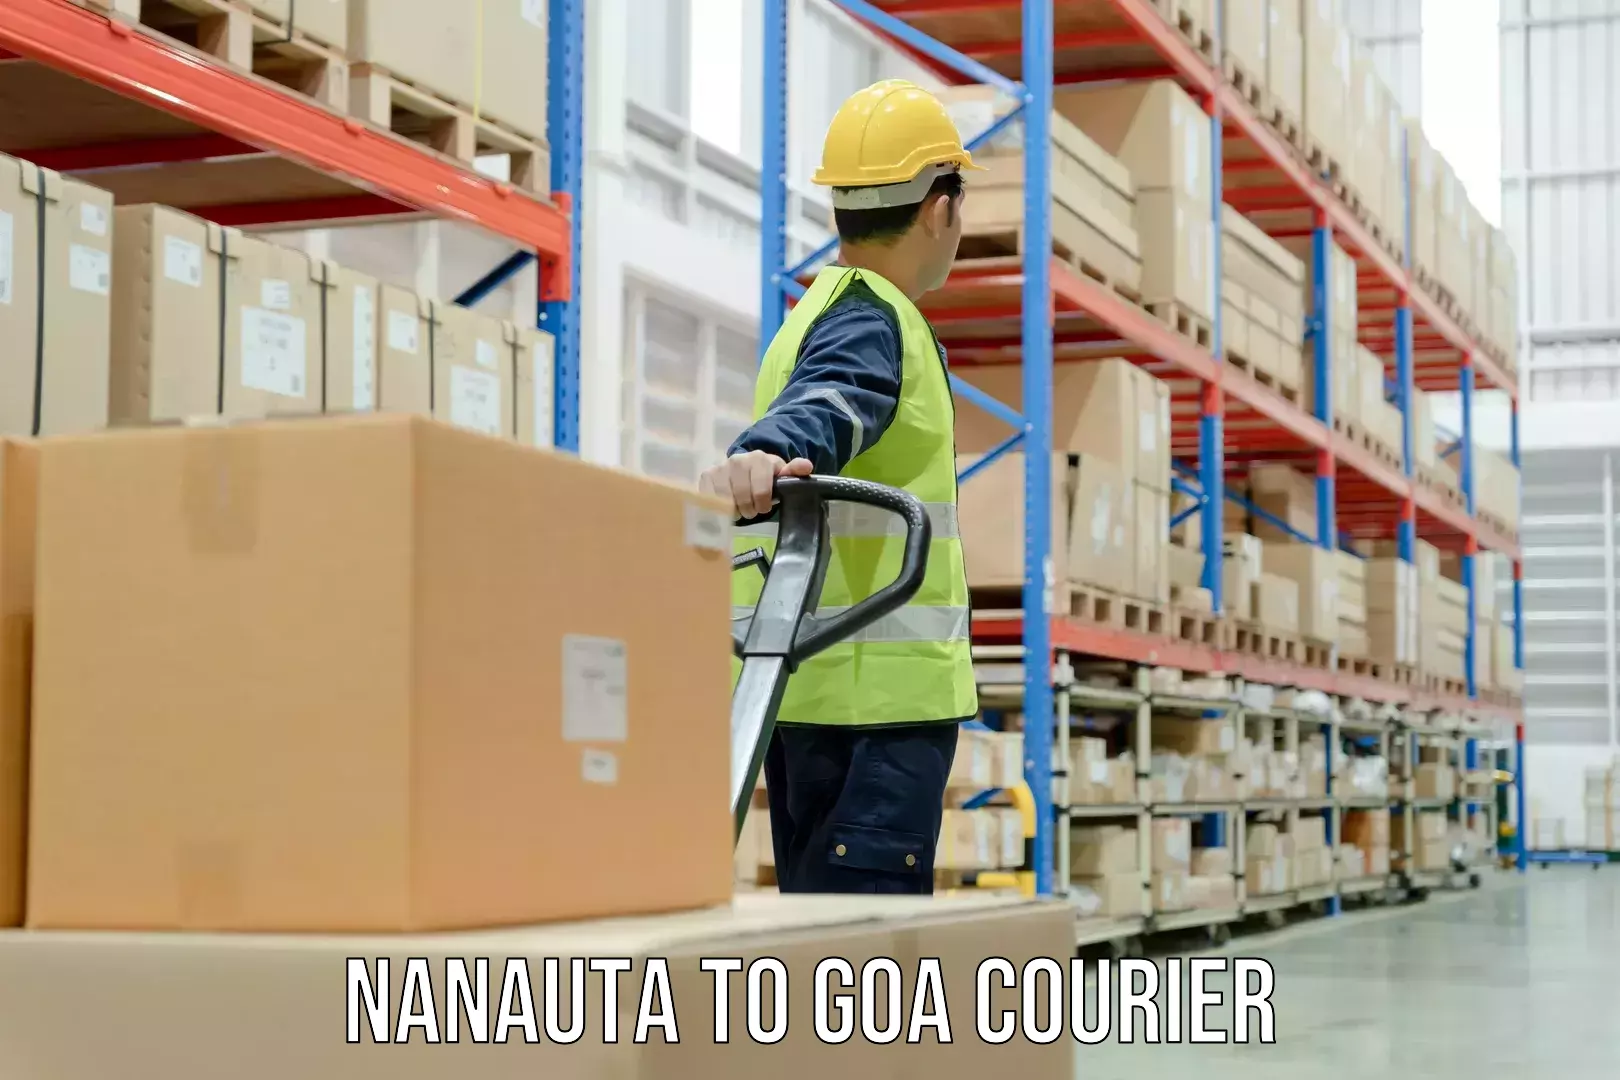 Optimized shipping routes Nanauta to NIT Goa